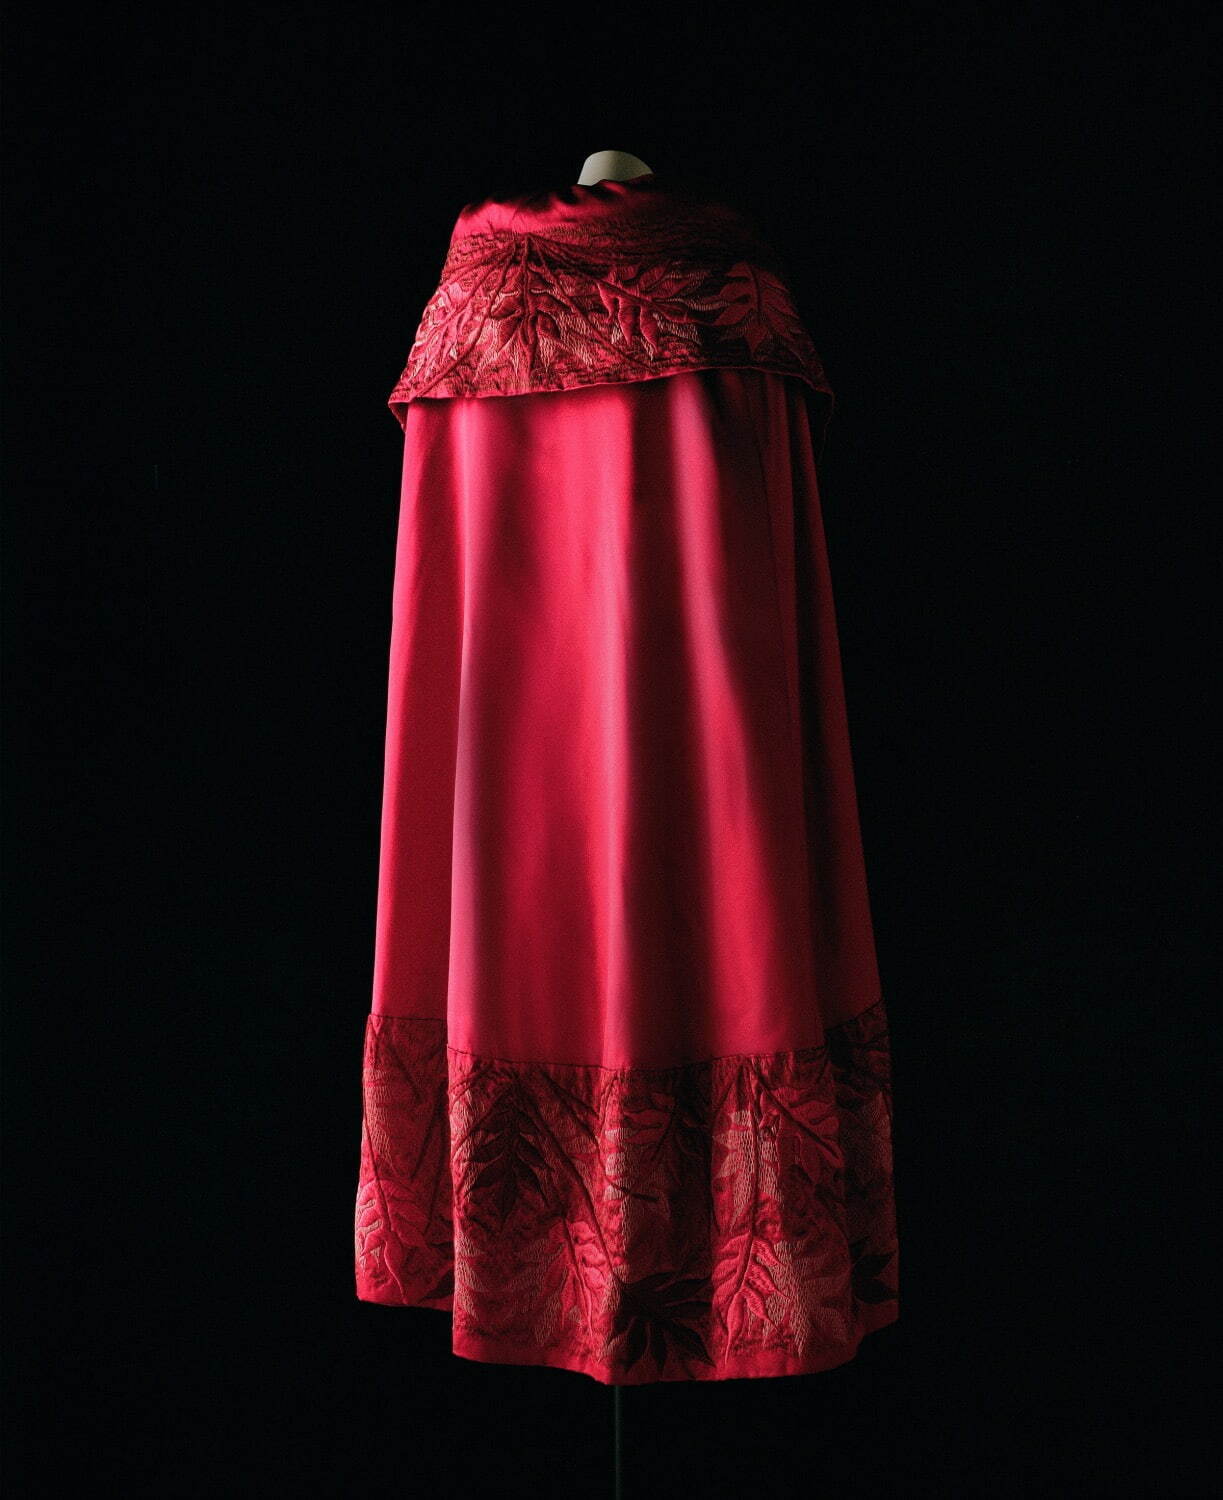 ガブリエル・シャネル ケープ
1923年 絹サテン、絹とウールのサテン・ステッチ パリ、パトリモアンヌ・シャネル
©Julien T. Hamon